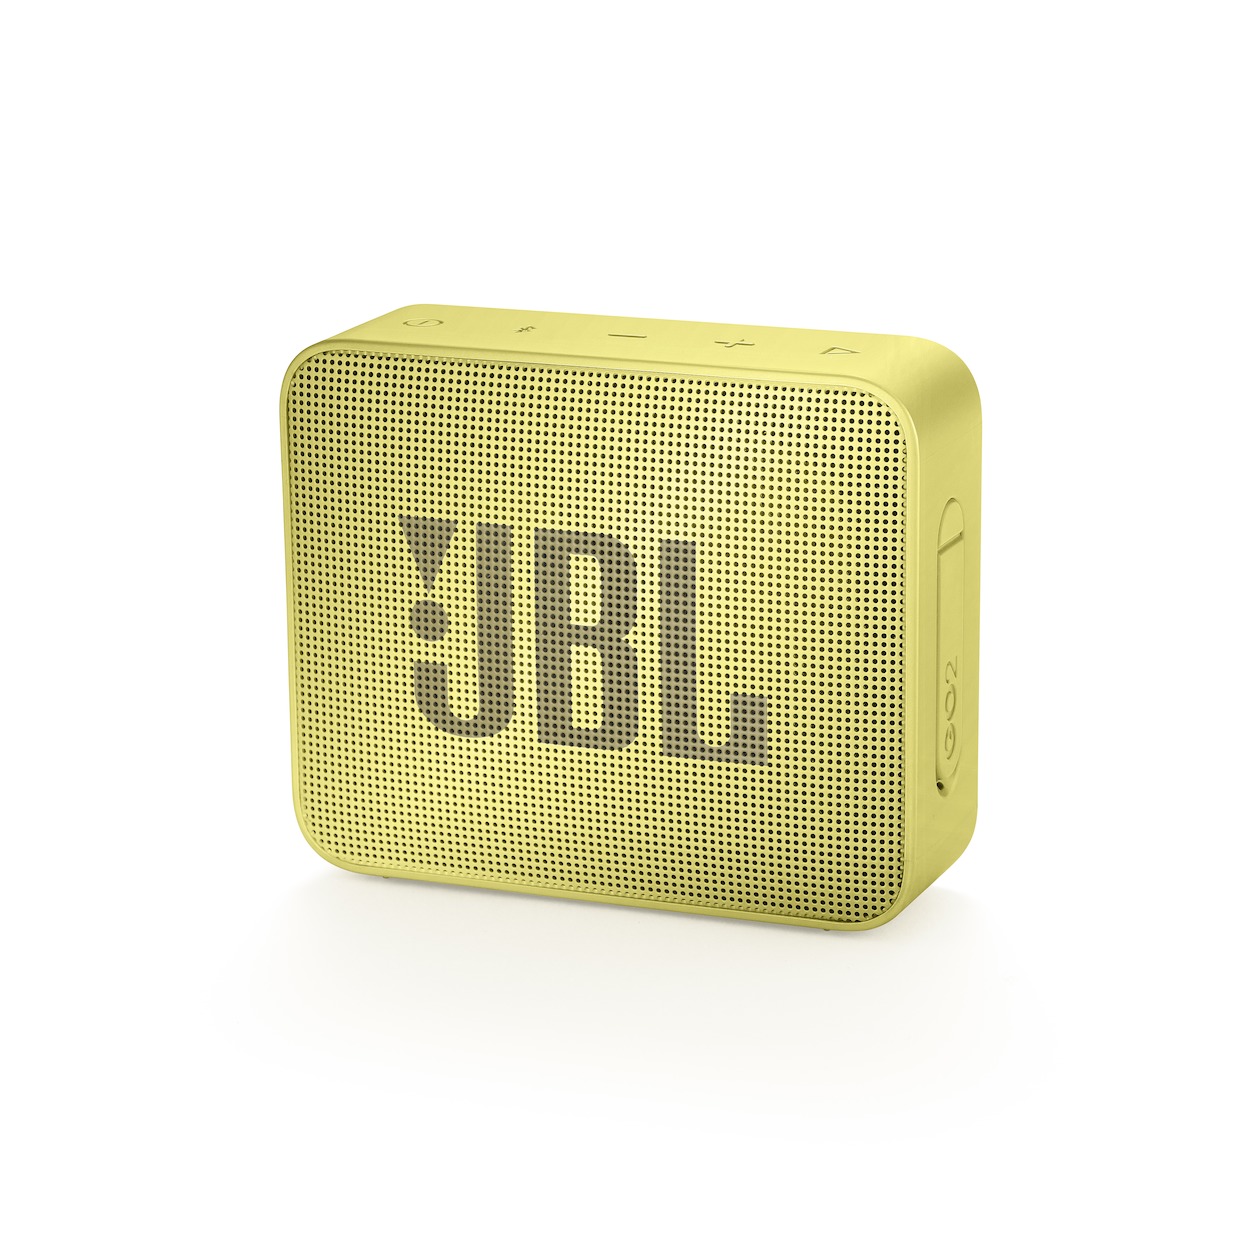 Telefoonleader - JBL GO 2 geel